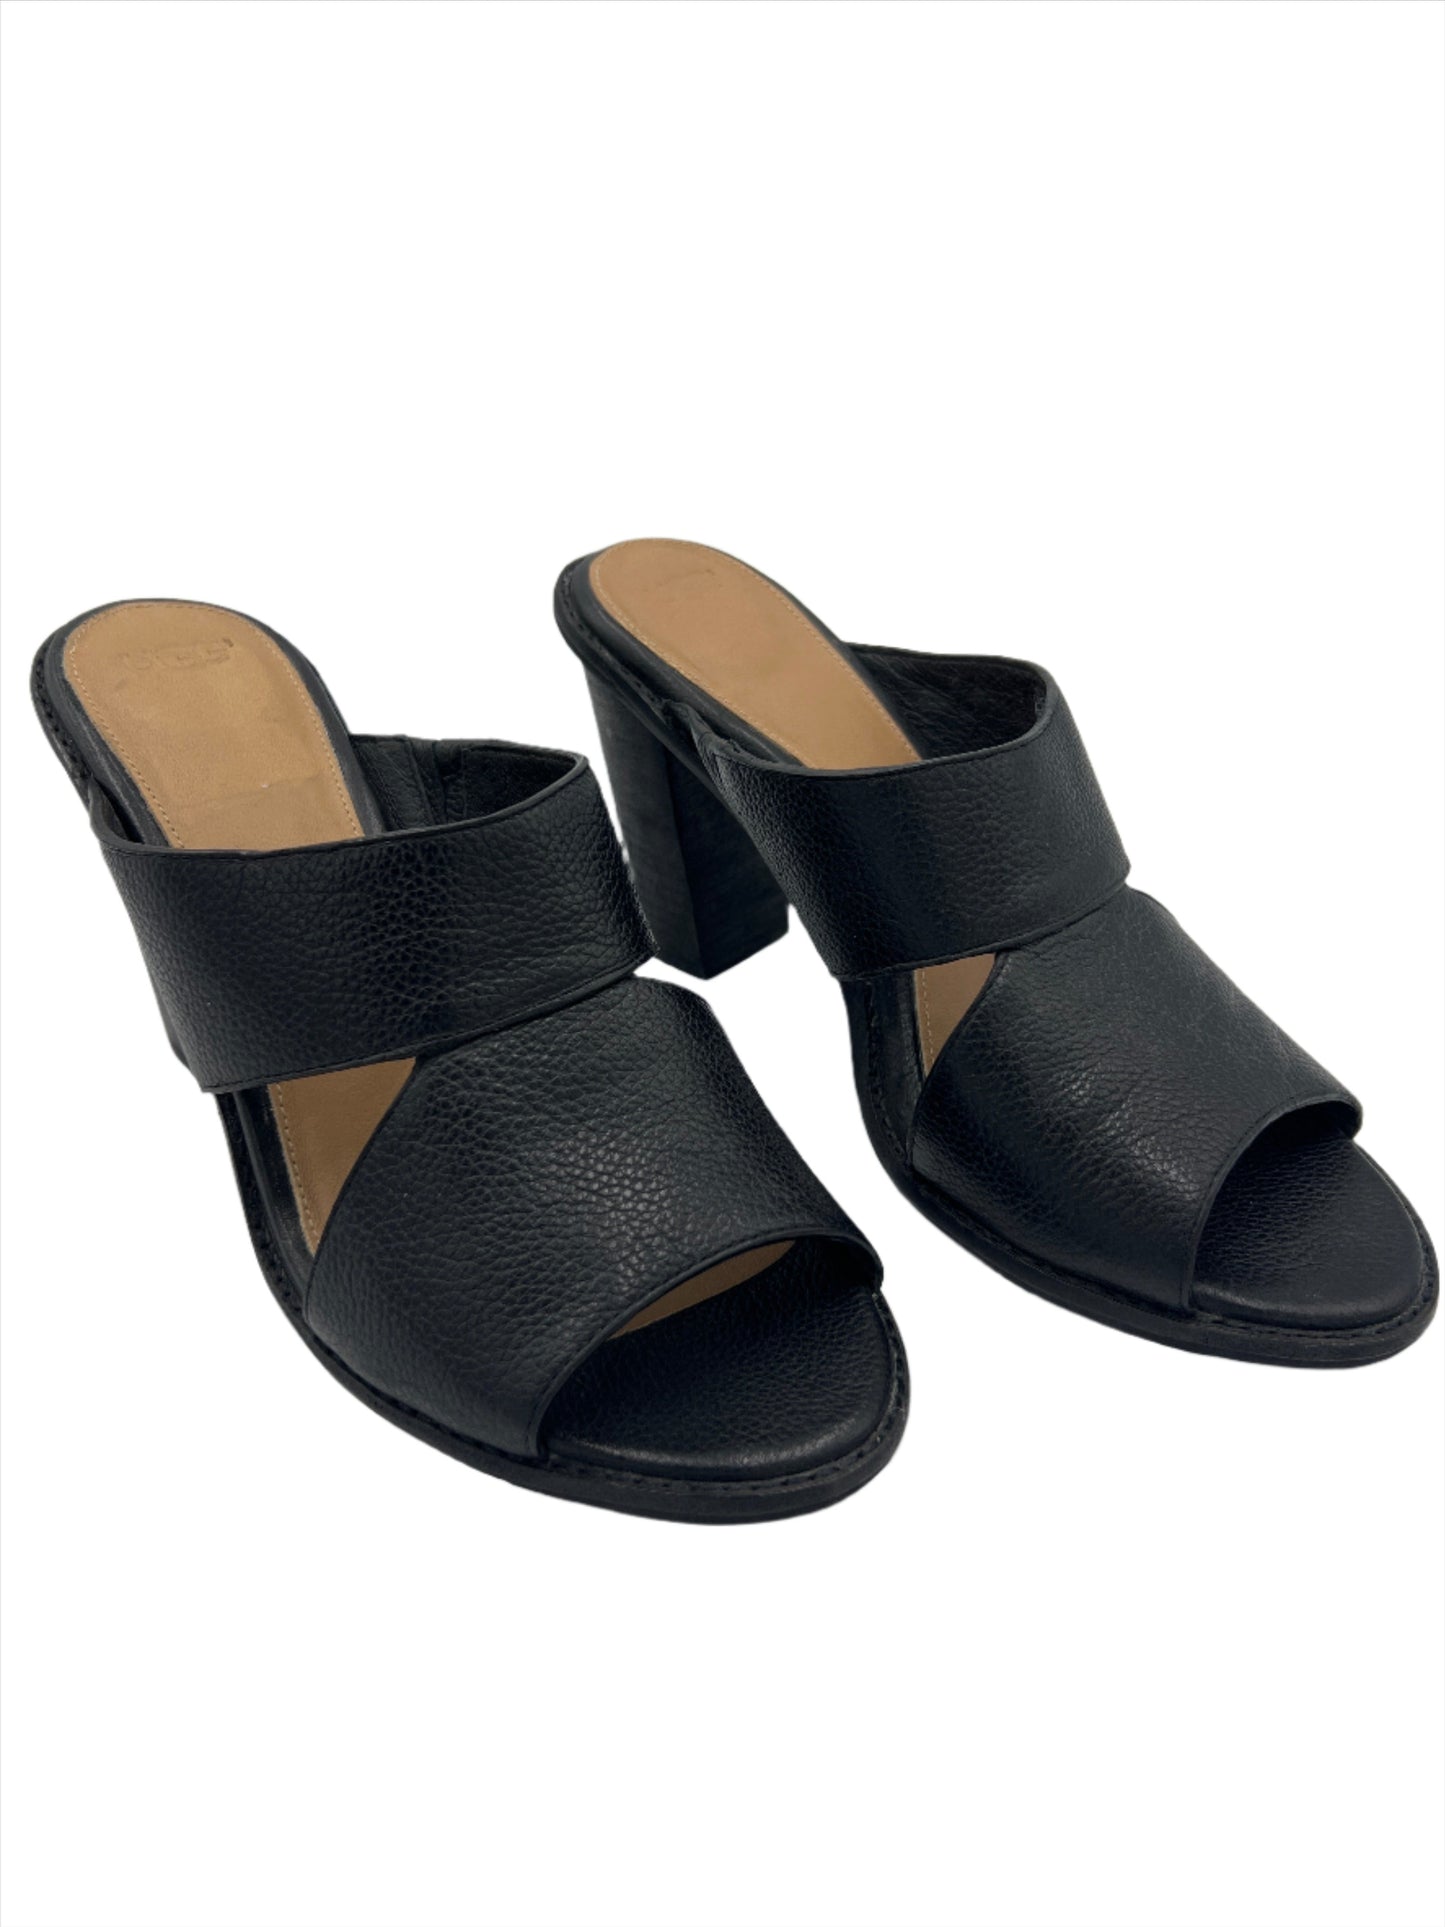 Black Shoes Heels Block Ugg, Size 10